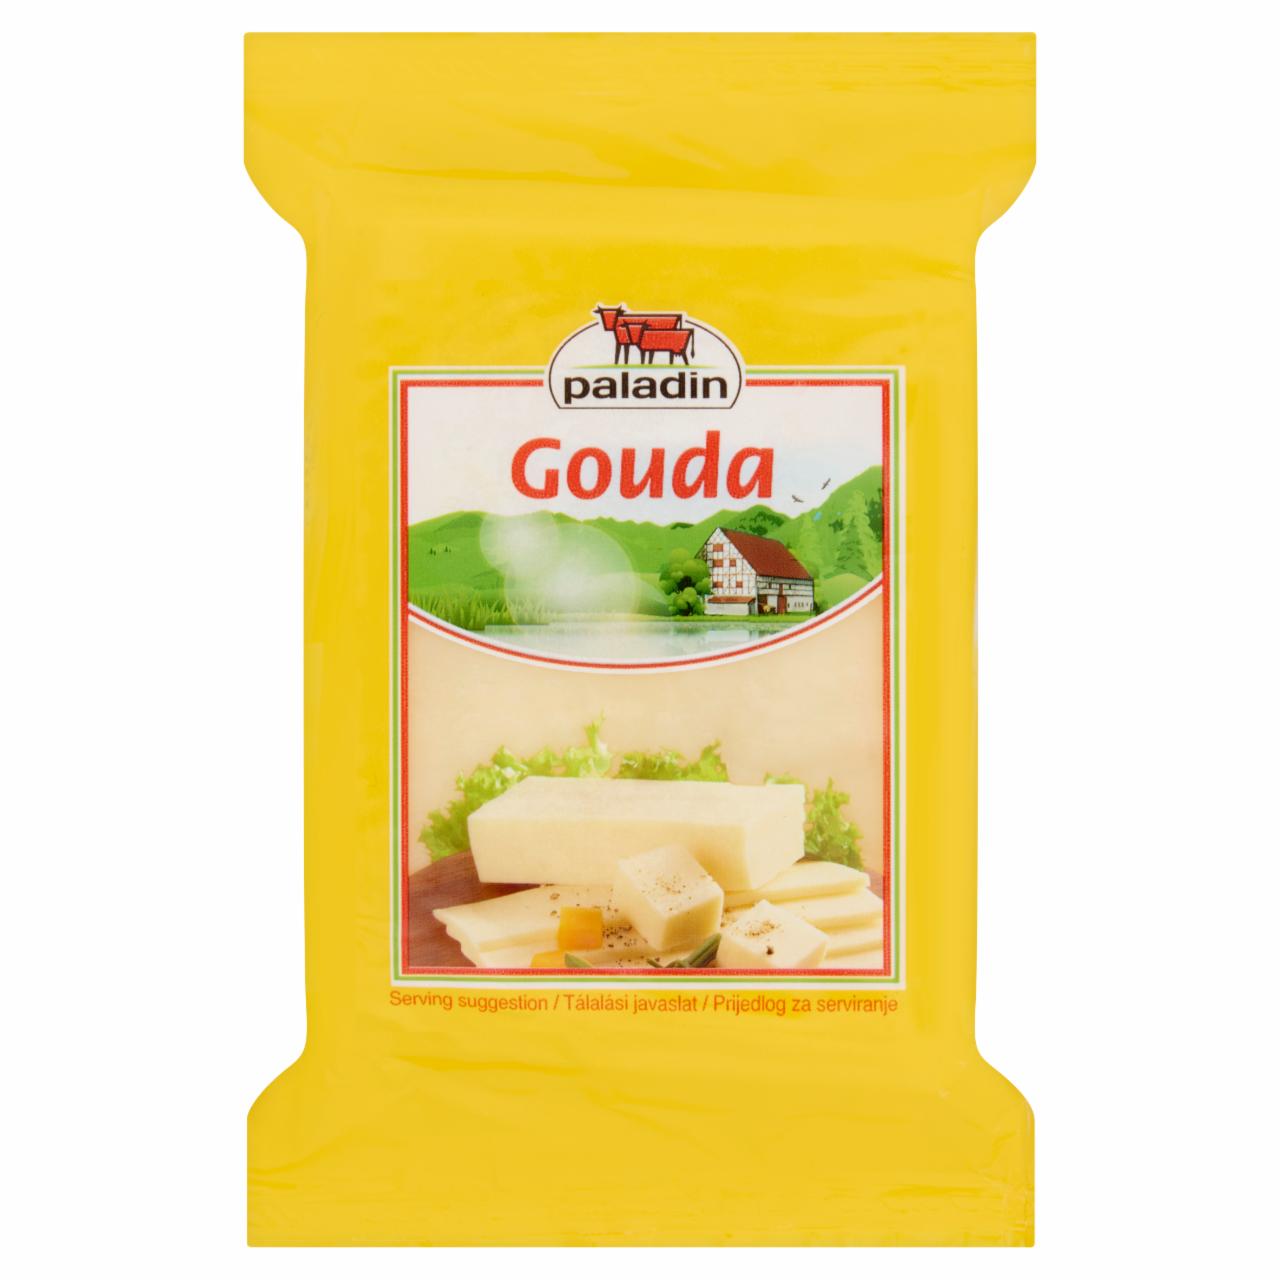 Képek - Paladin gouda félkemény, zsíros sajt 200 g